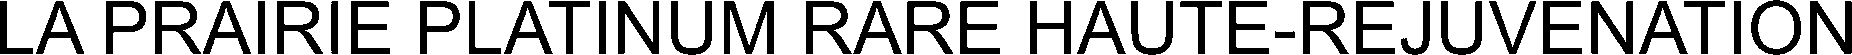 Trademark Logo LA PRAIRIE PLATINUM RARE HAUTE-REJUVENATION